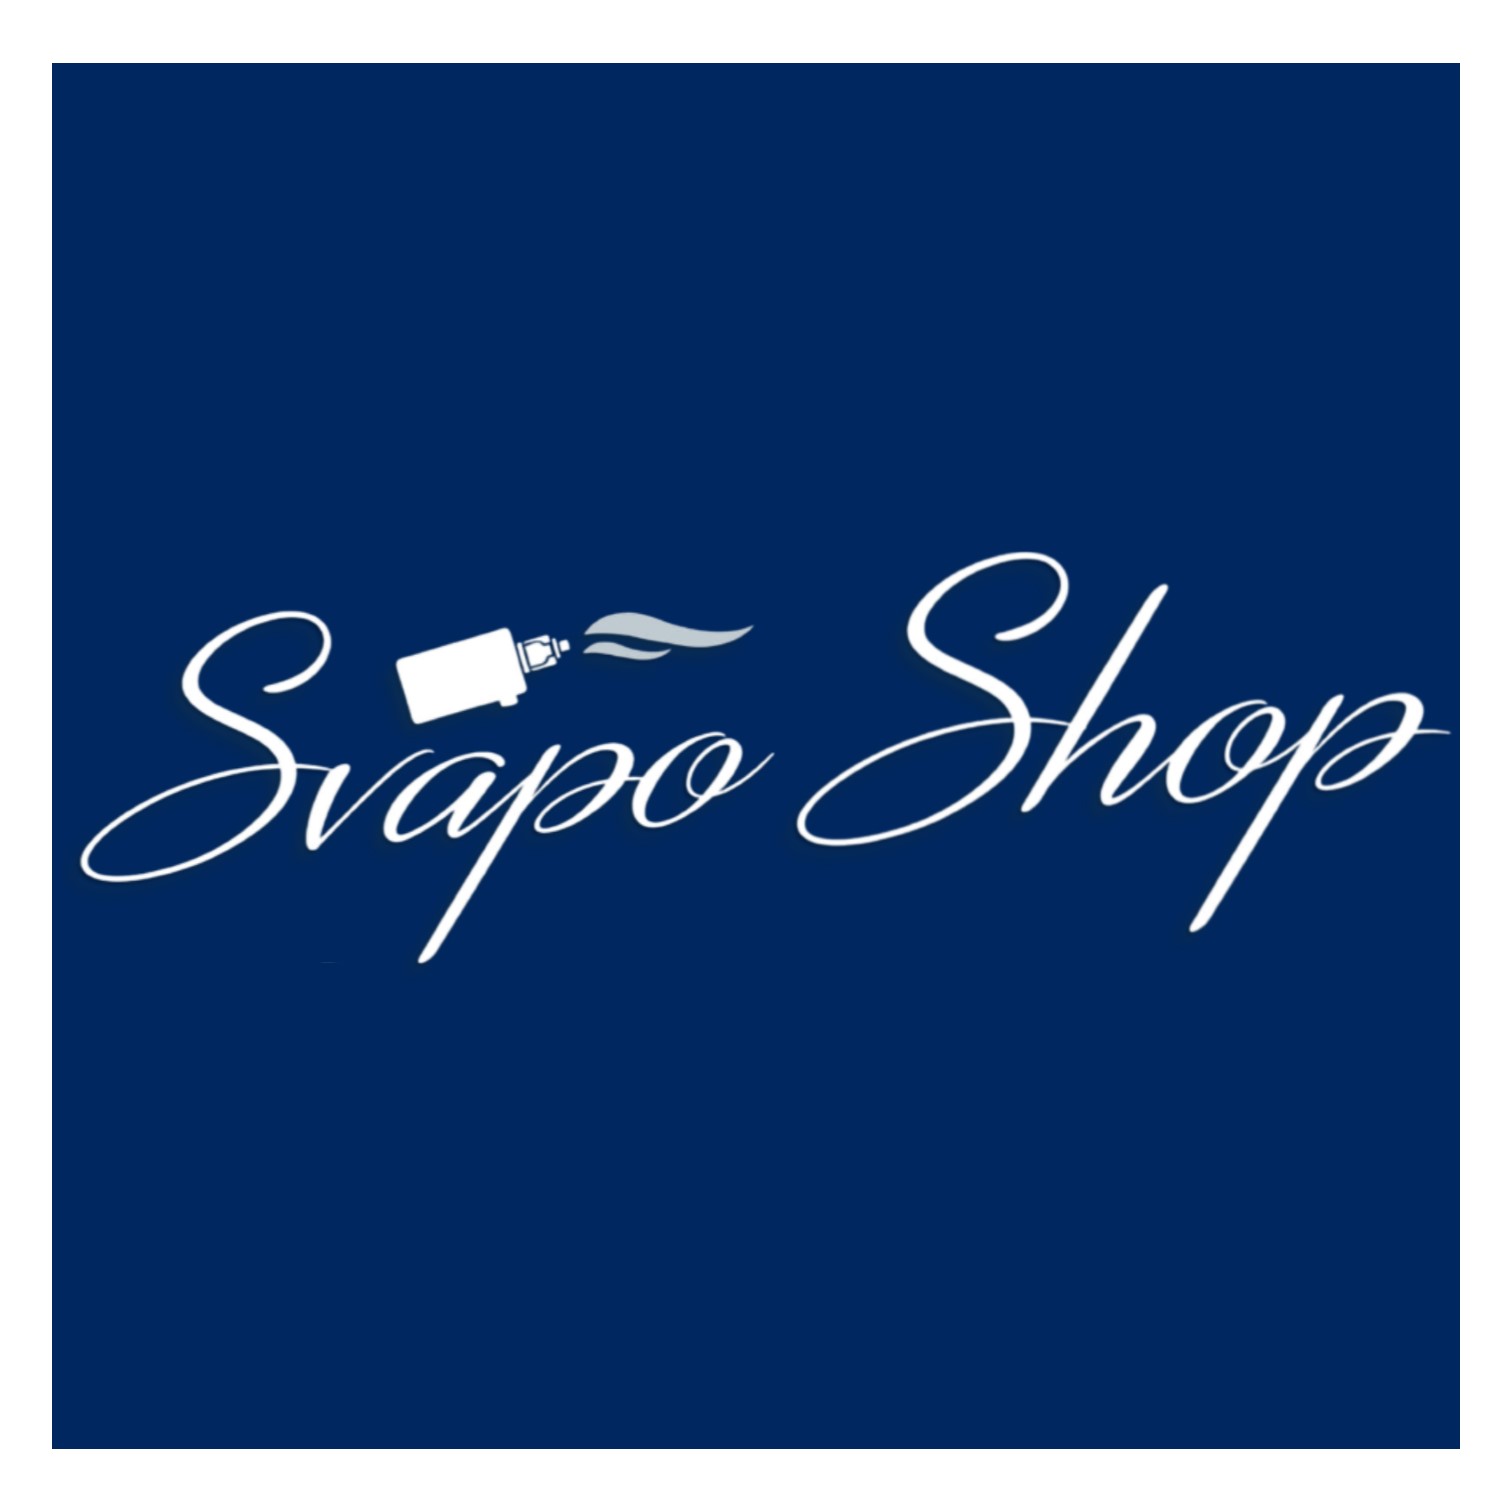 Logo Svapo Shop